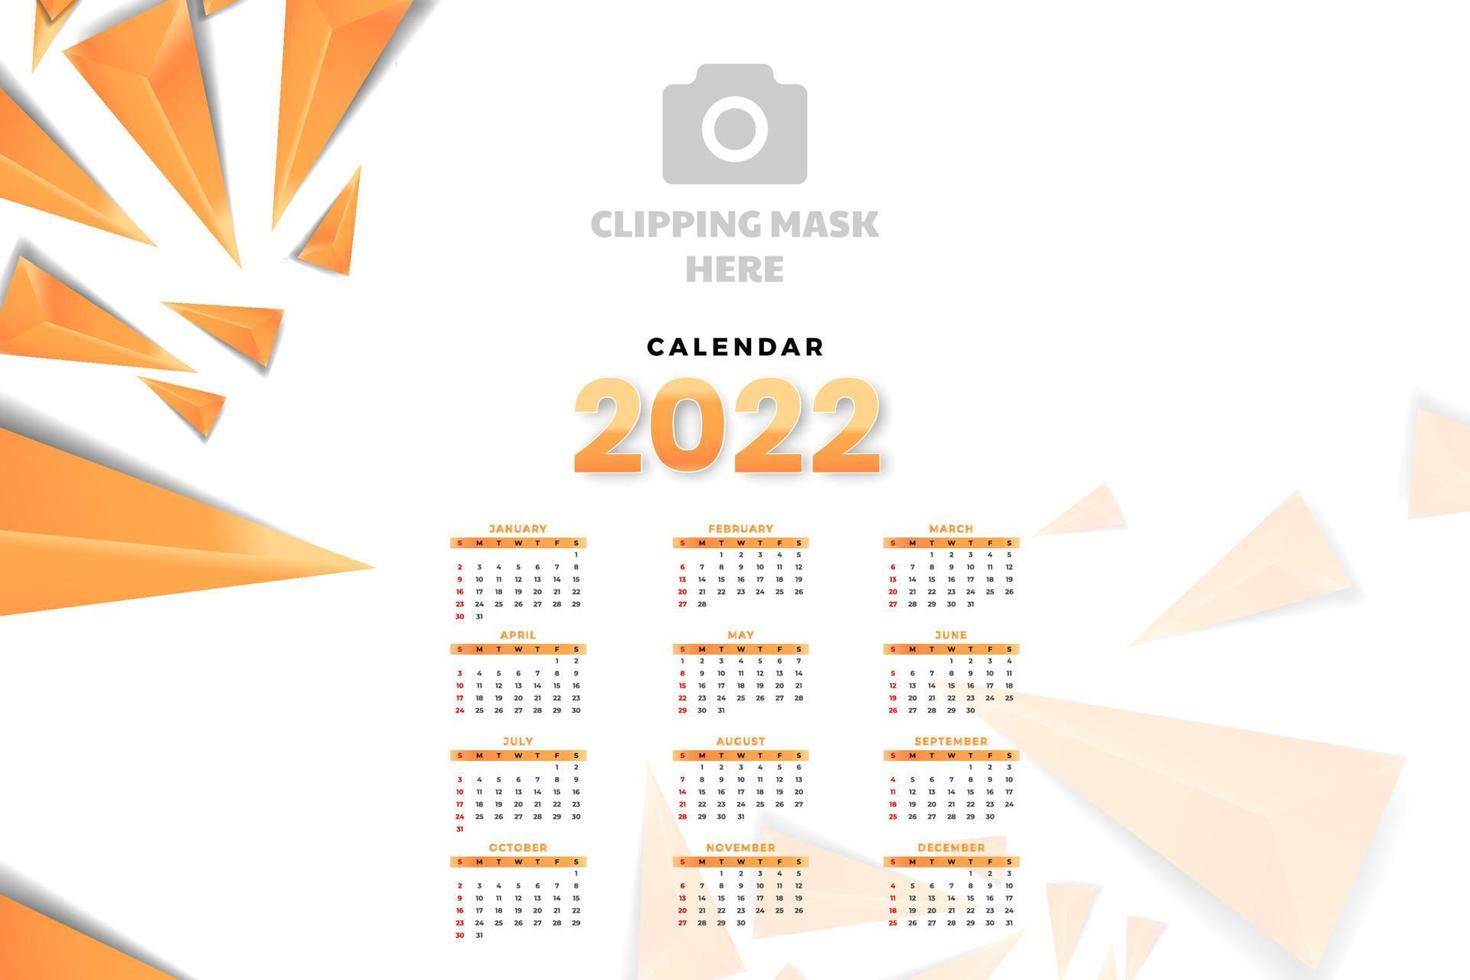 plantilla de calendario mensual para el año 2022. la semana comienza el domingo. Calendario de pared de estilo minimalista. vector